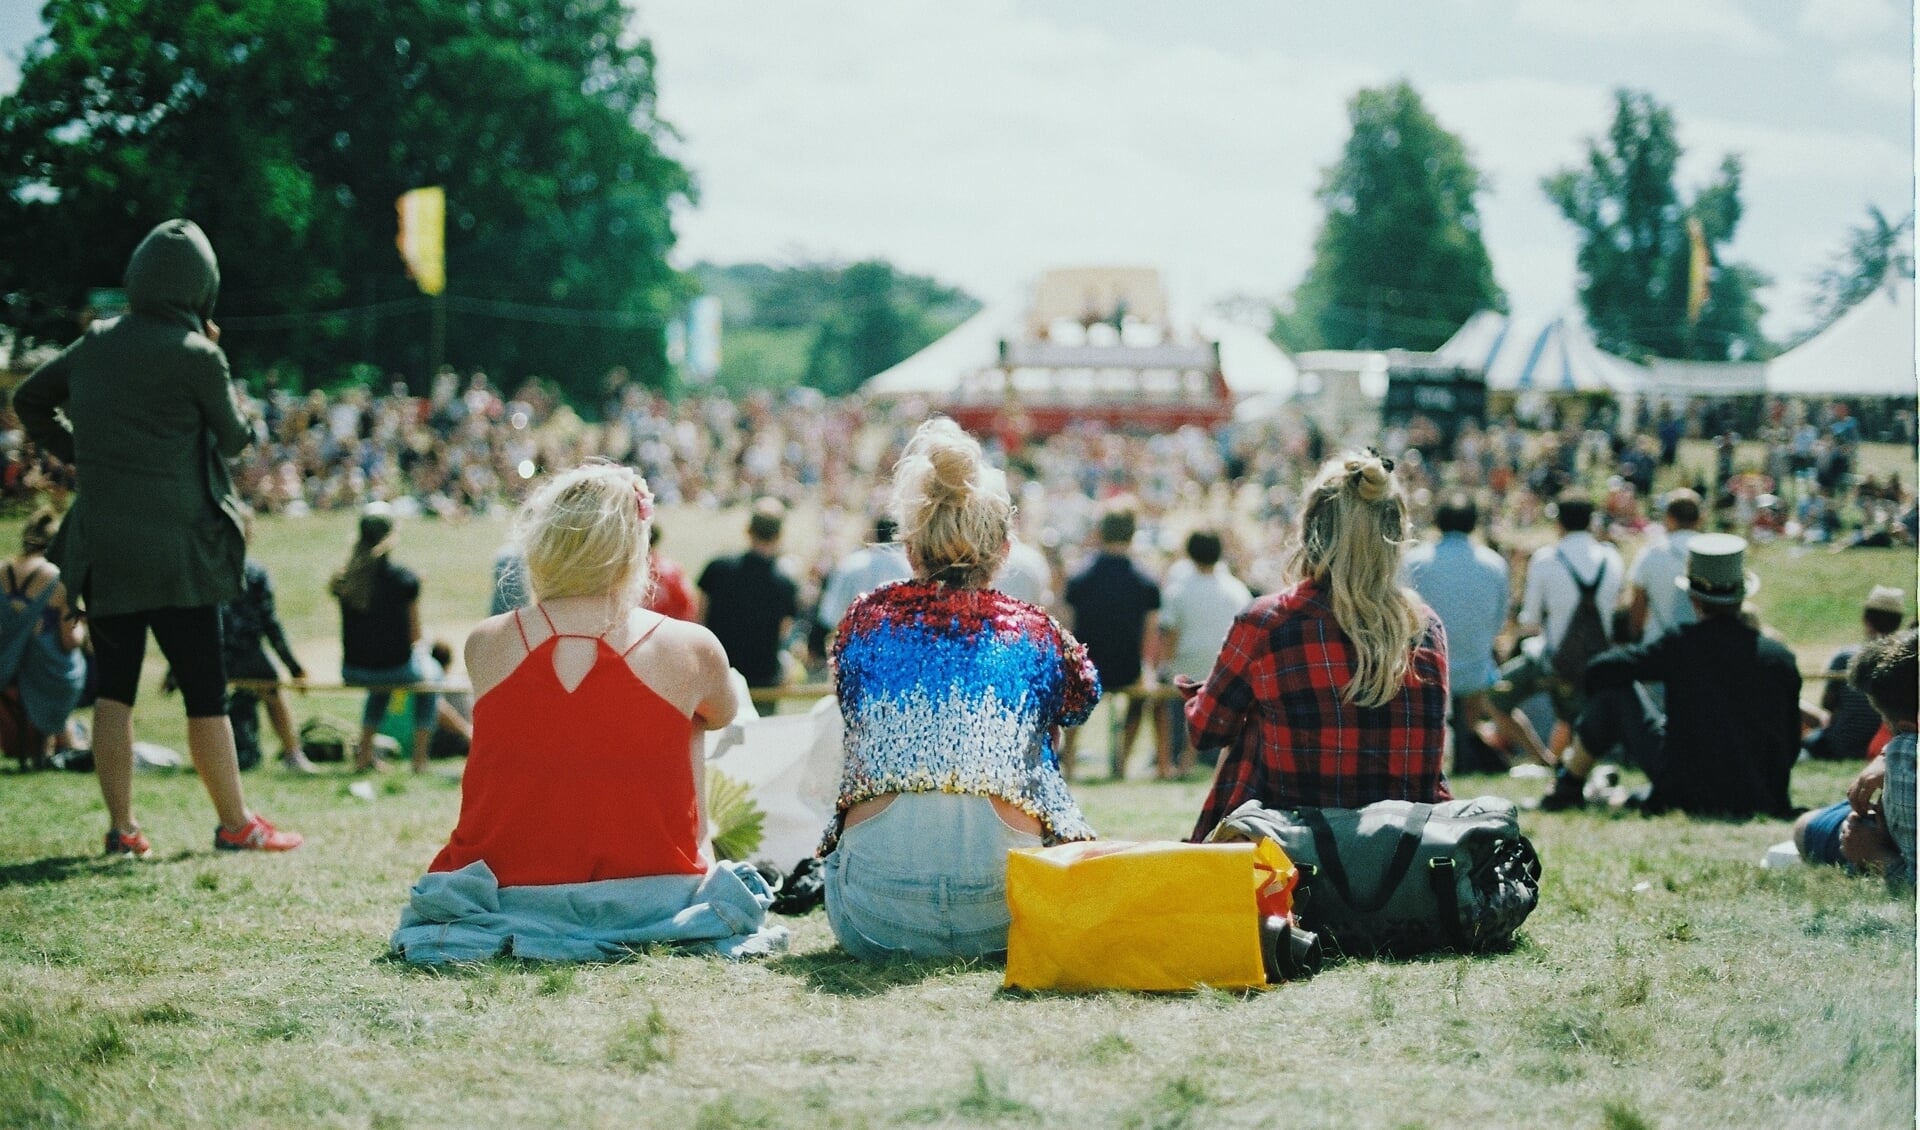 Sommige bezoekers van festivals gebruiken alcohol en drugs voor meer feestvreugde.